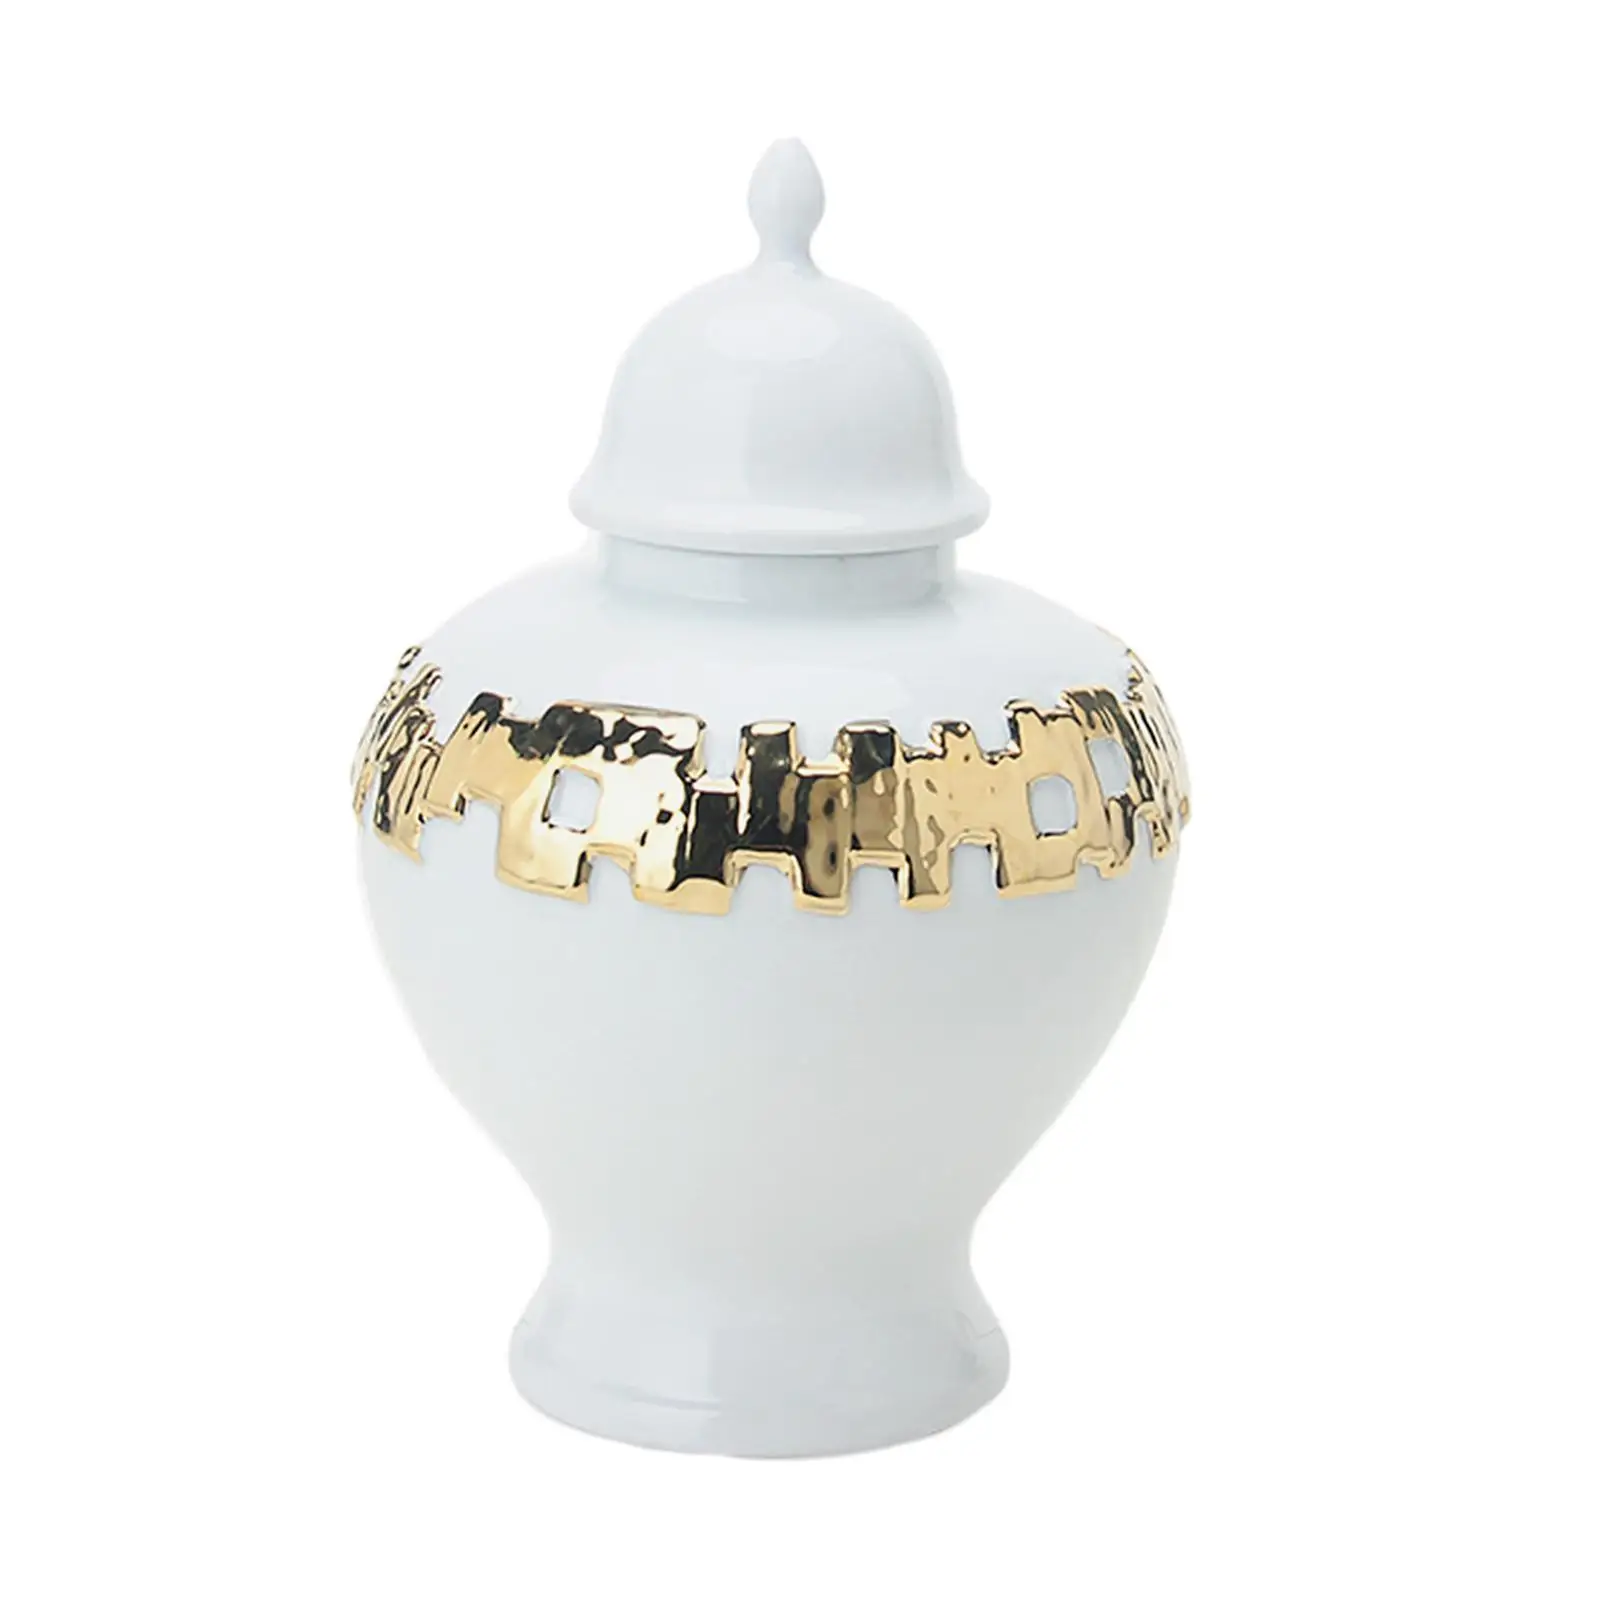 Ceramic Vase Ginger Jar with Lid Handicraft 18x27.5cm Fine Glaze Finish Delicate